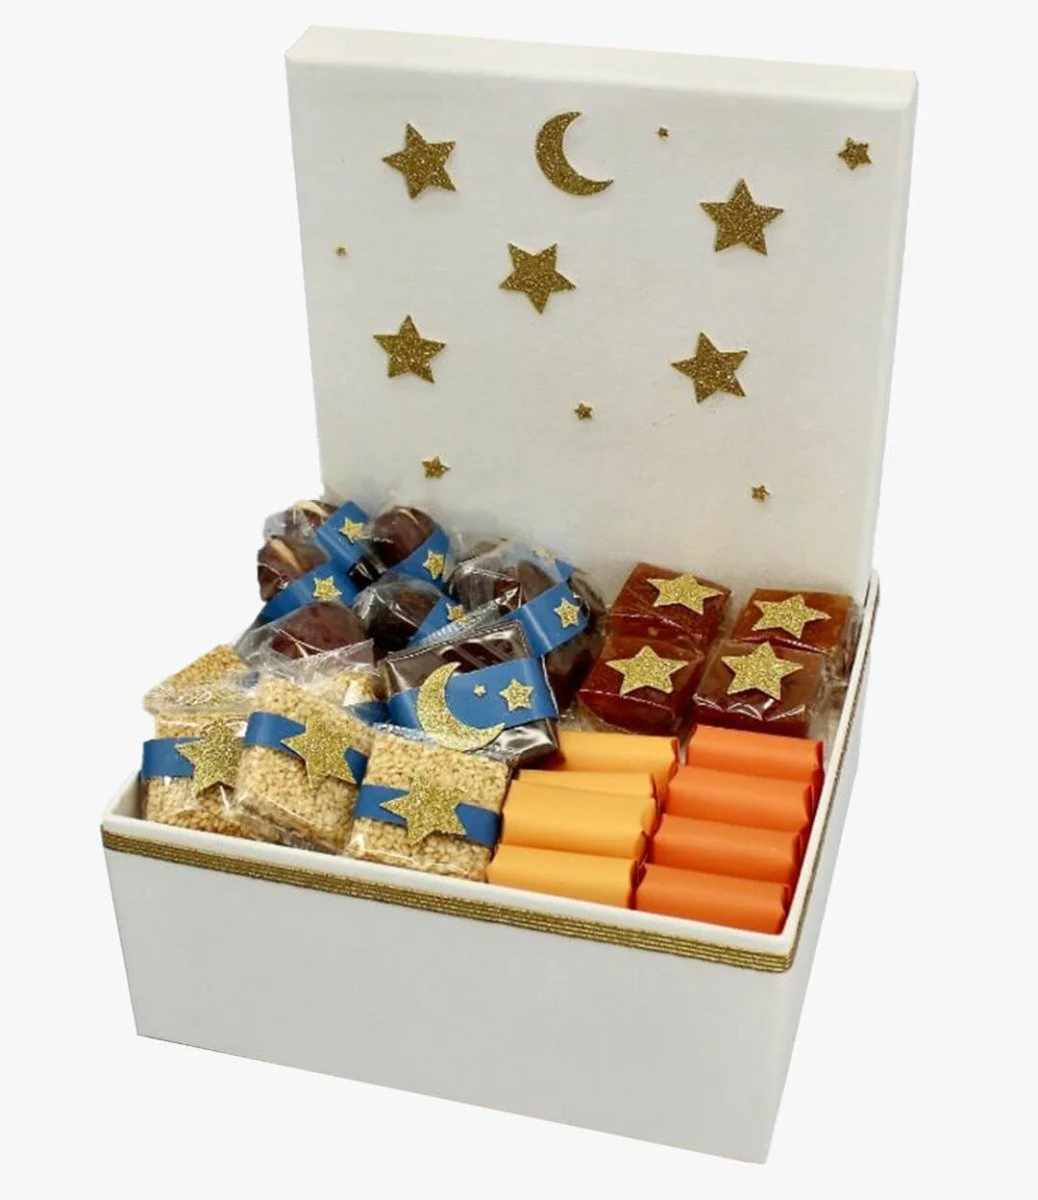 سلة تمر وشوكولاتة رمضان الفاخرة  صغيرة من لو شوكولايتير دبي